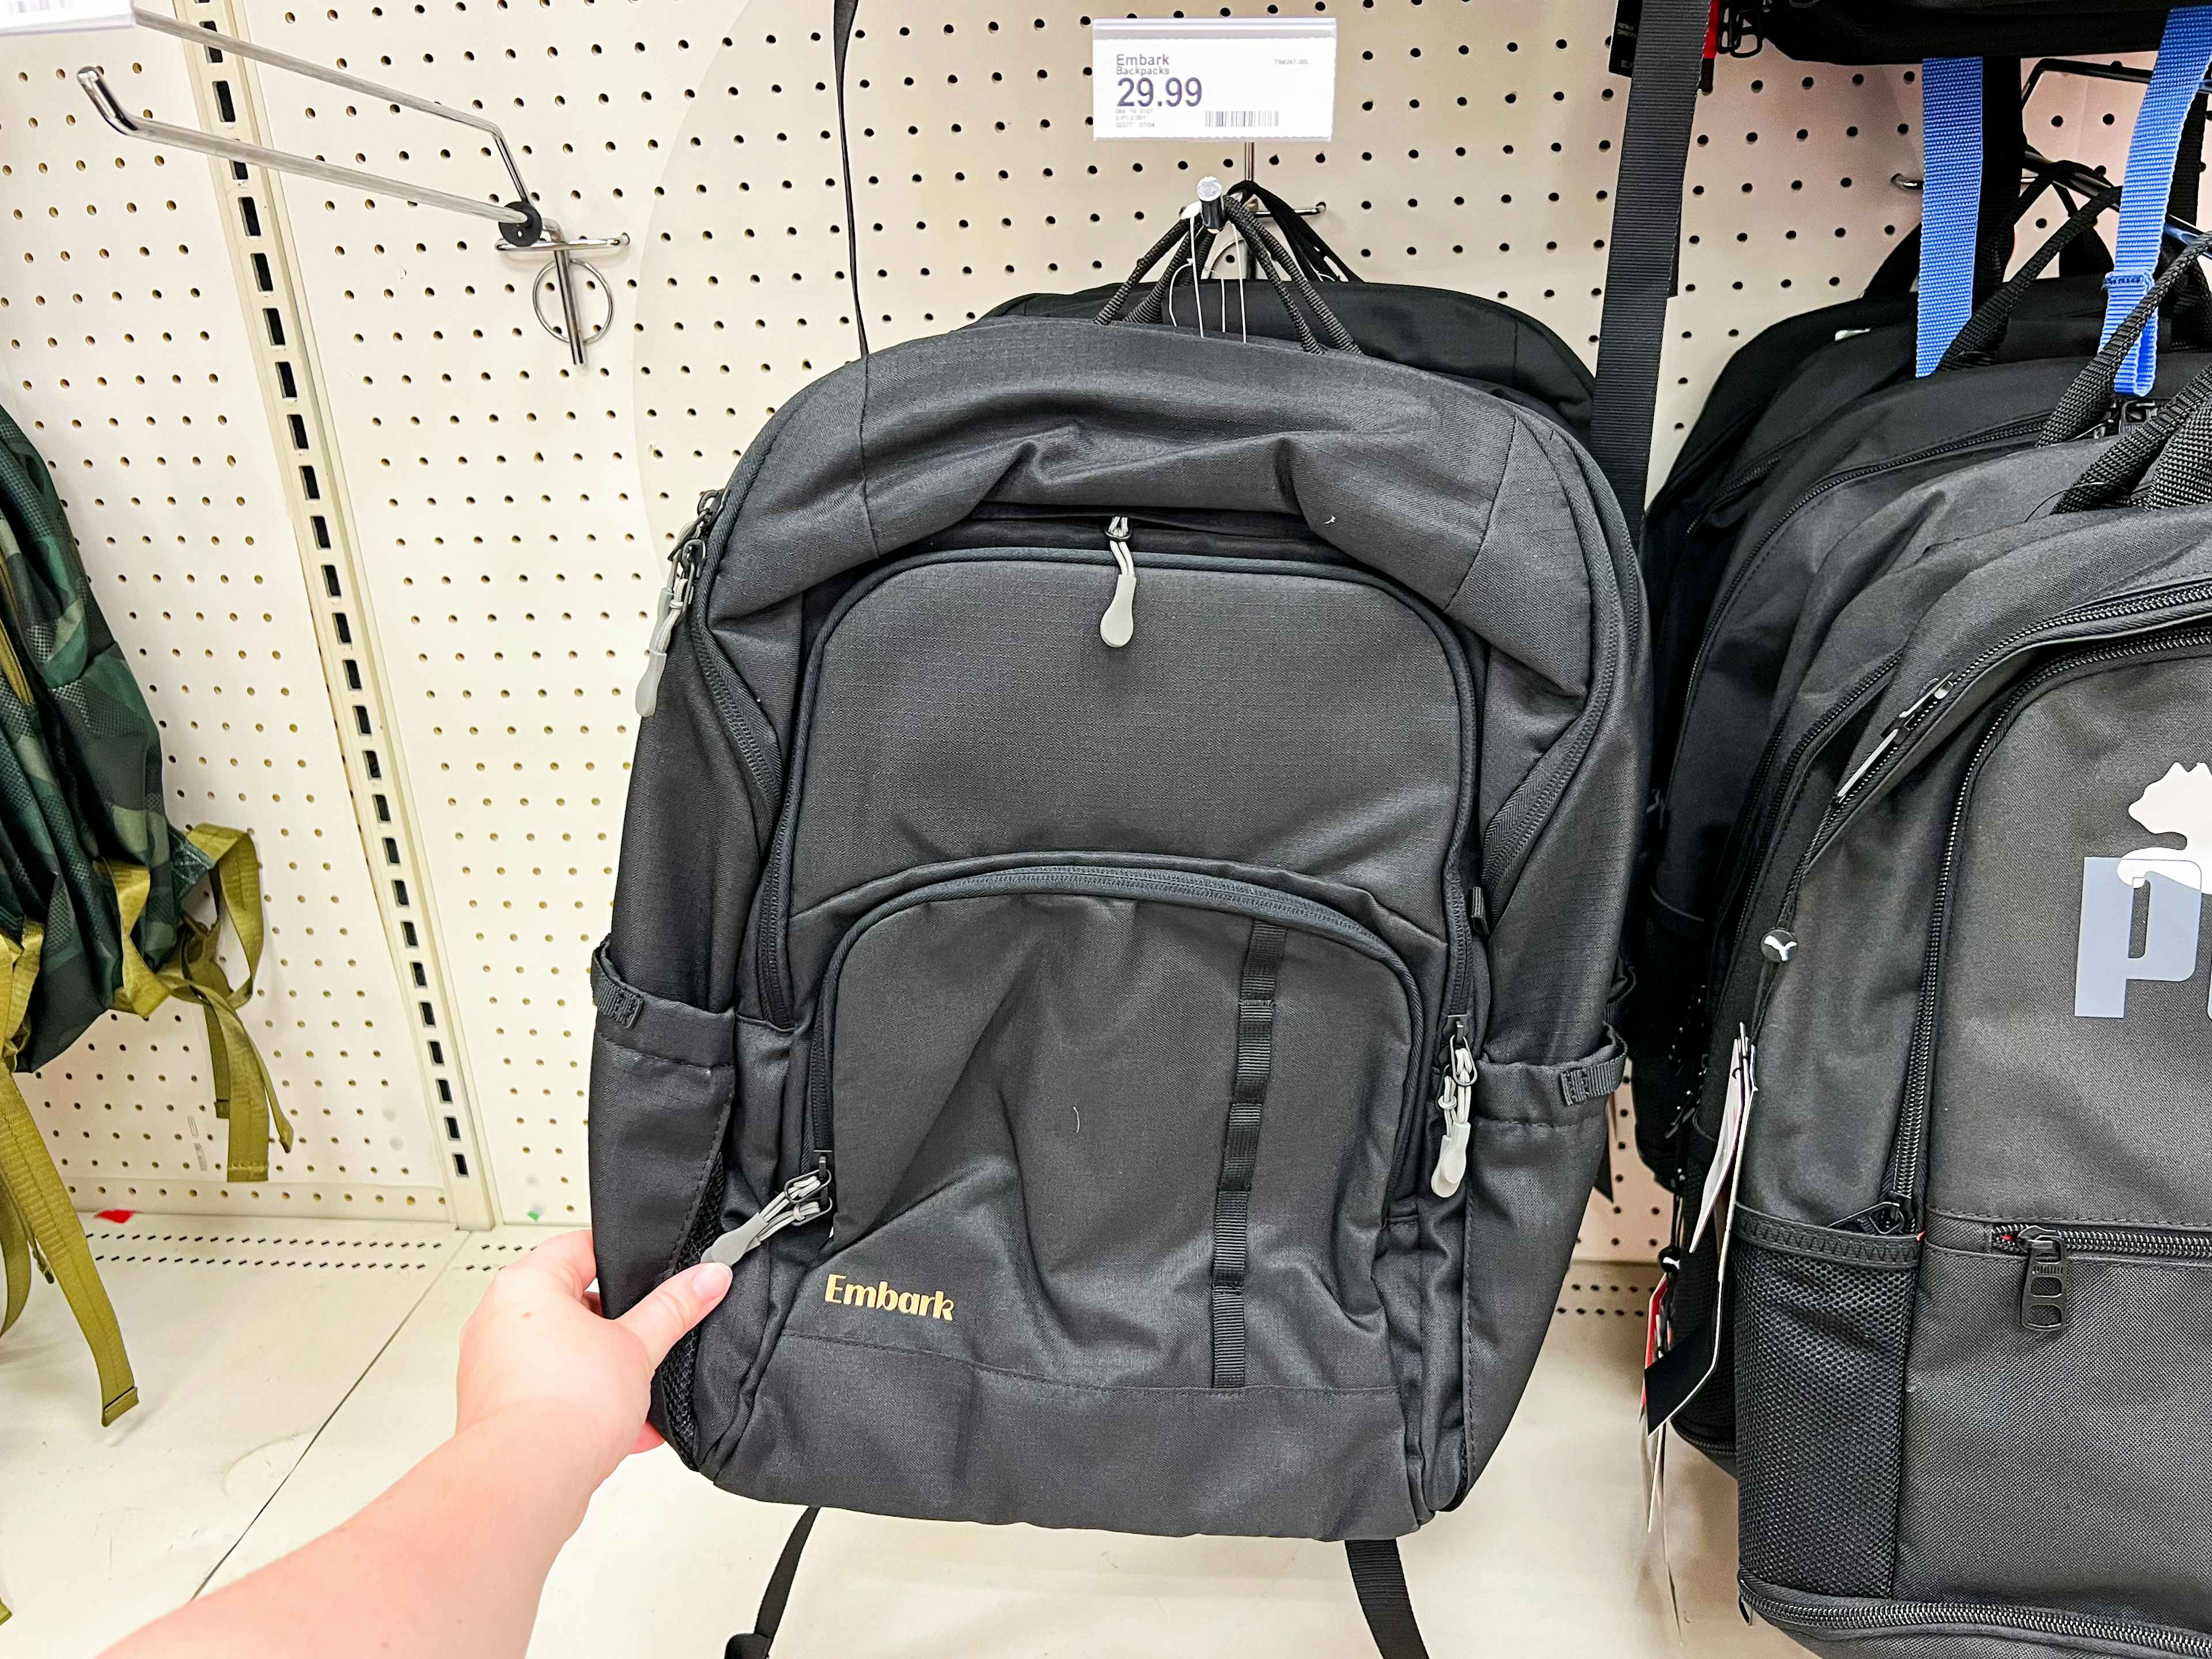 embark-top-load-backpacks-target1